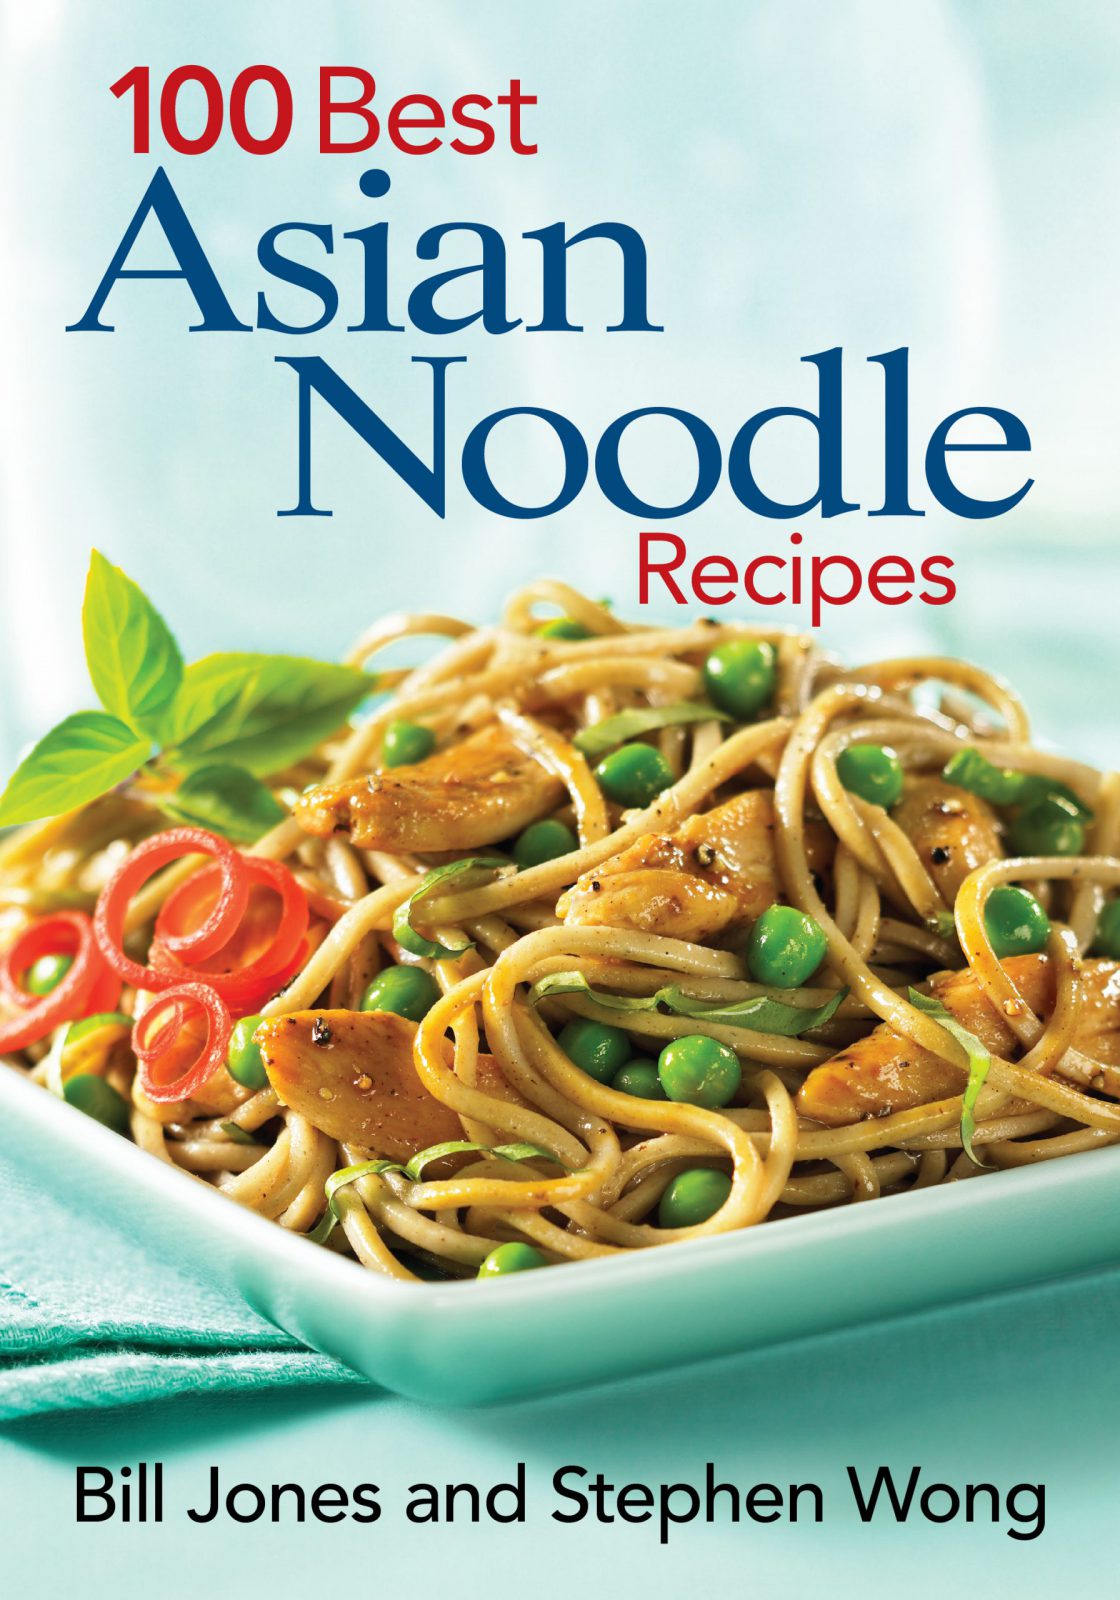 100 Best Asian Noodle Recipes